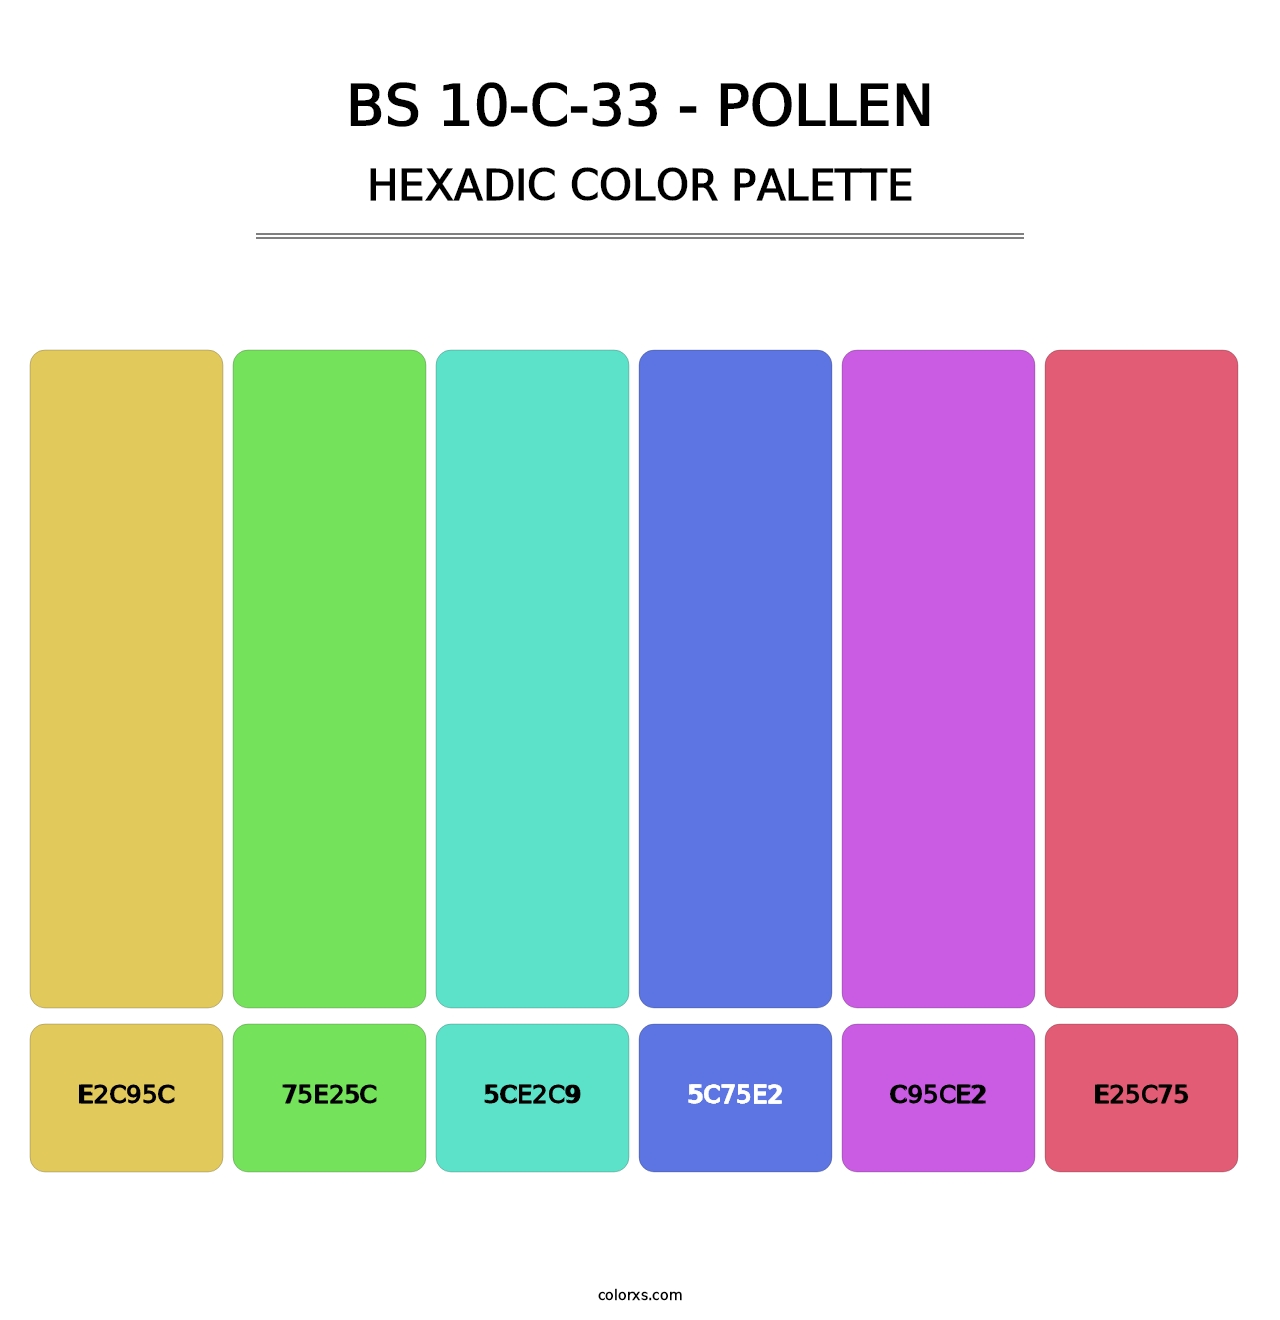 BS 10-C-33 - Pollen - Hexadic Color Palette